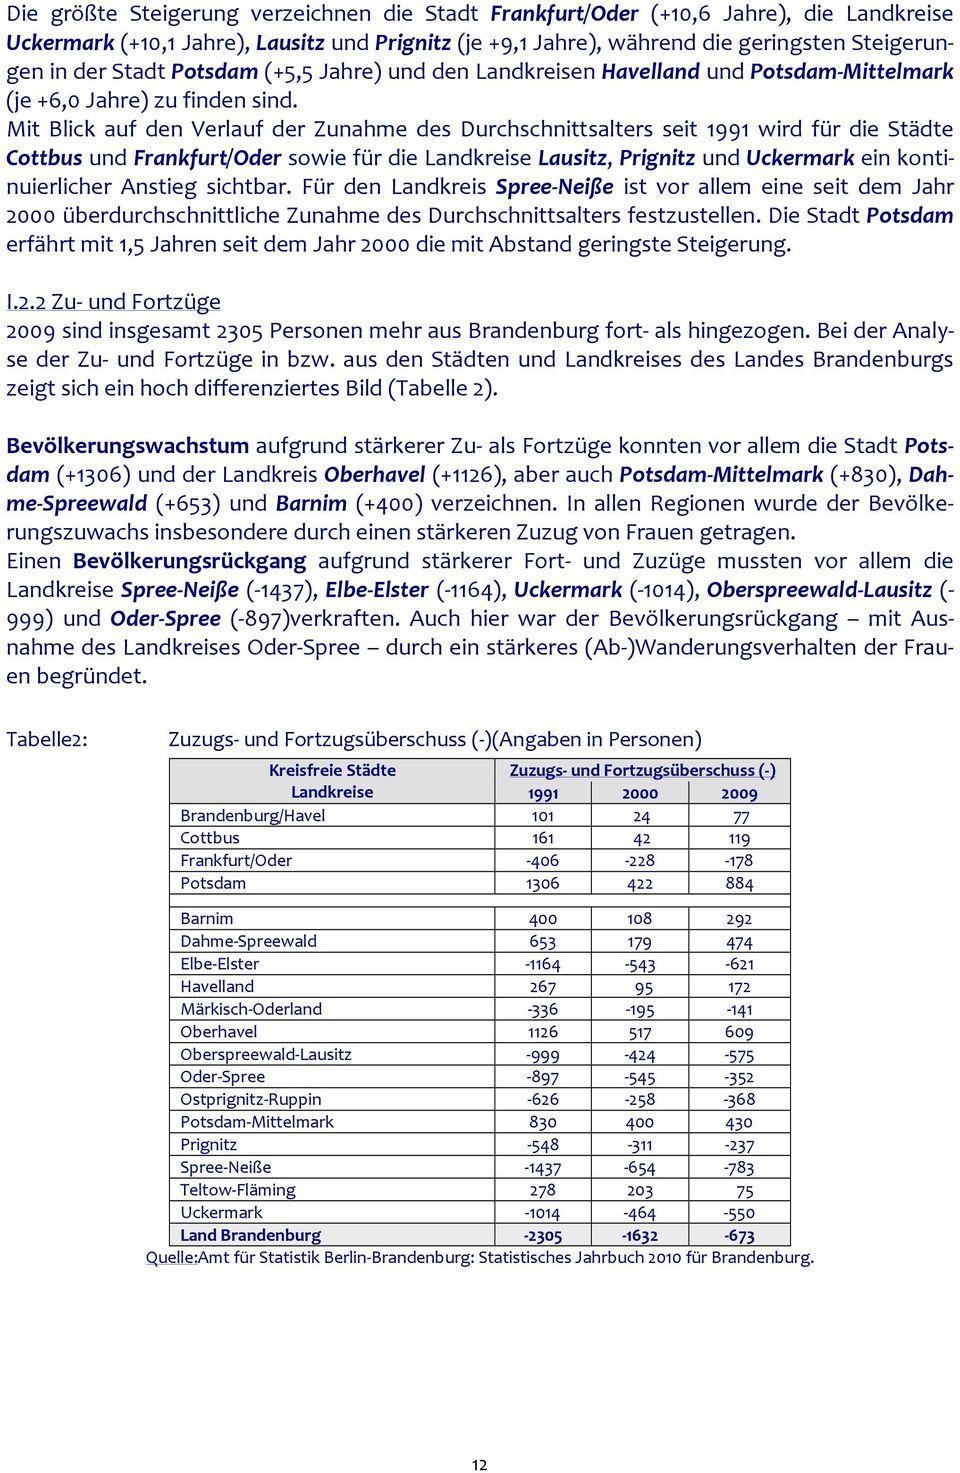 Mit Blick auf den Verlauf der Zunahme des Durchschnittsalters seit 1991 wird für die Städte Cottbus und Frankfurt/Oder sowie für die Landkreise Lausitz, Prignitz und Uckermark ein kontinuierlicher